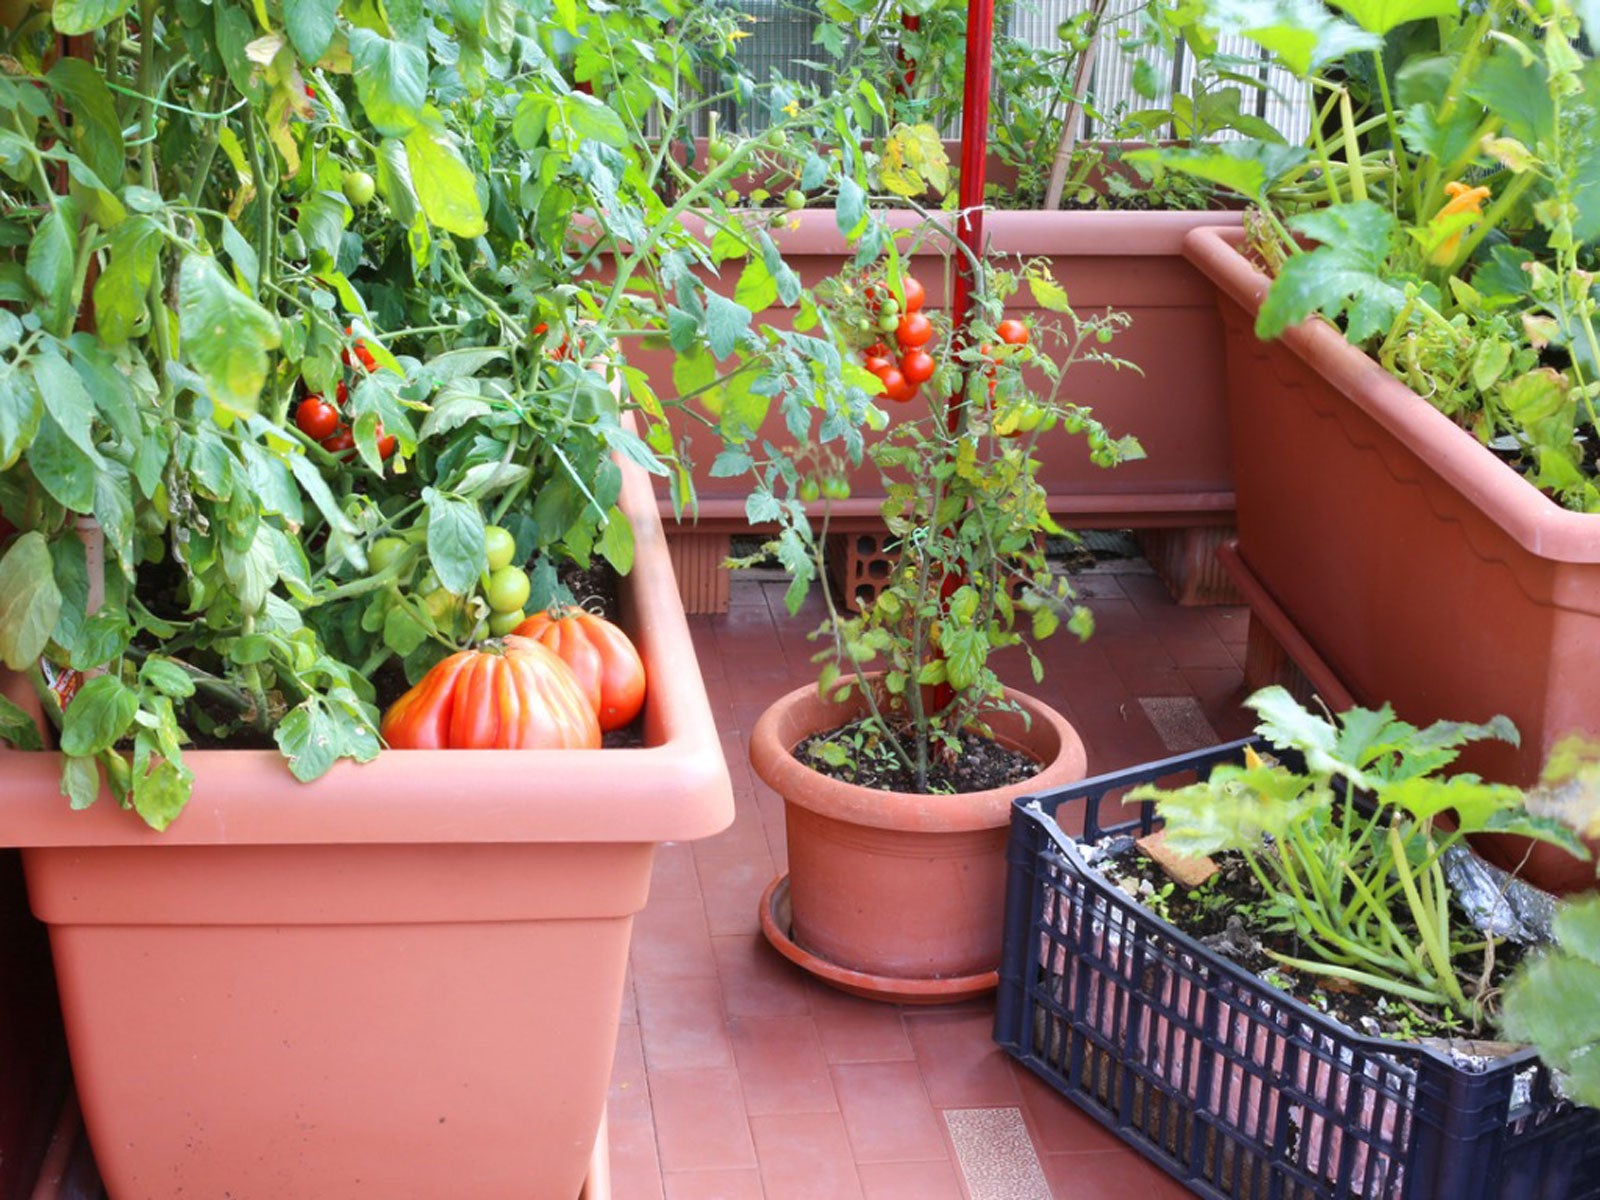 Kitchen garden plants in pots